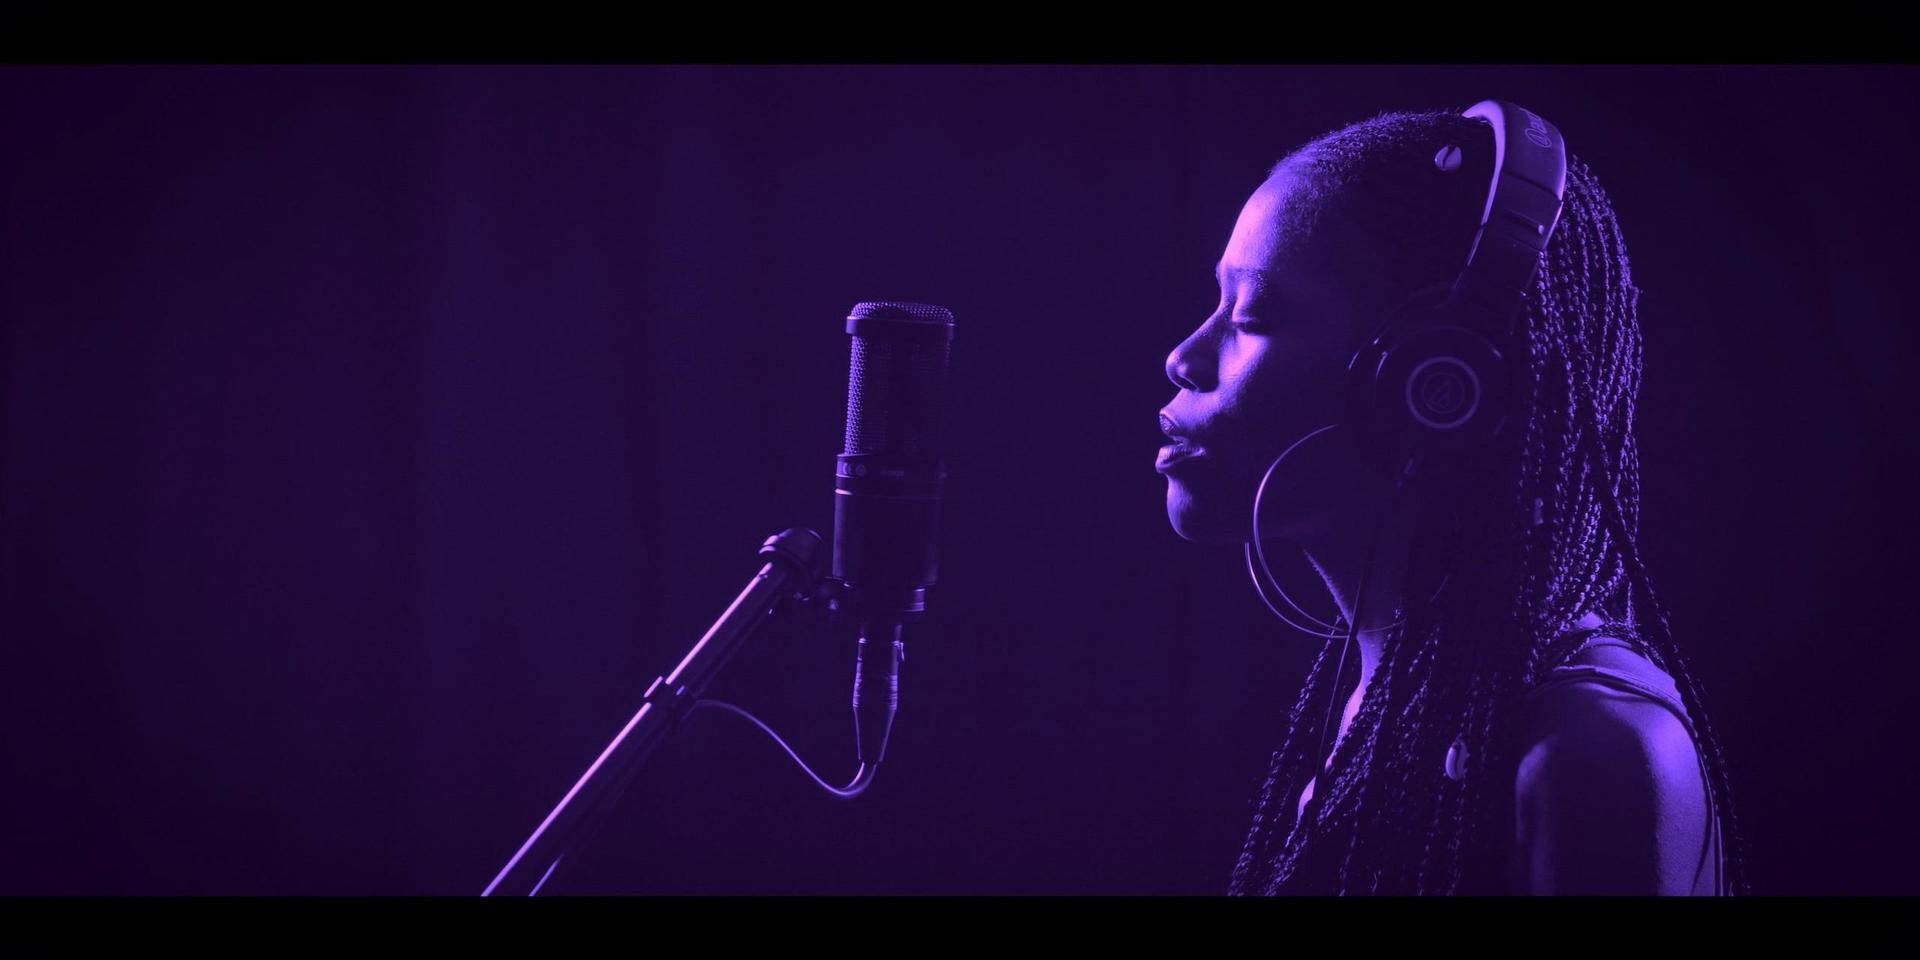 Multimediakonstnären Gabrielle Goliaths text- ljus- och videoinstallation 'This song is for...' från 2019 är ett av verken som visas i utställningen. Verket består av musik inspelad för sydafrikanska våldtäktsoffer. Pressbild.